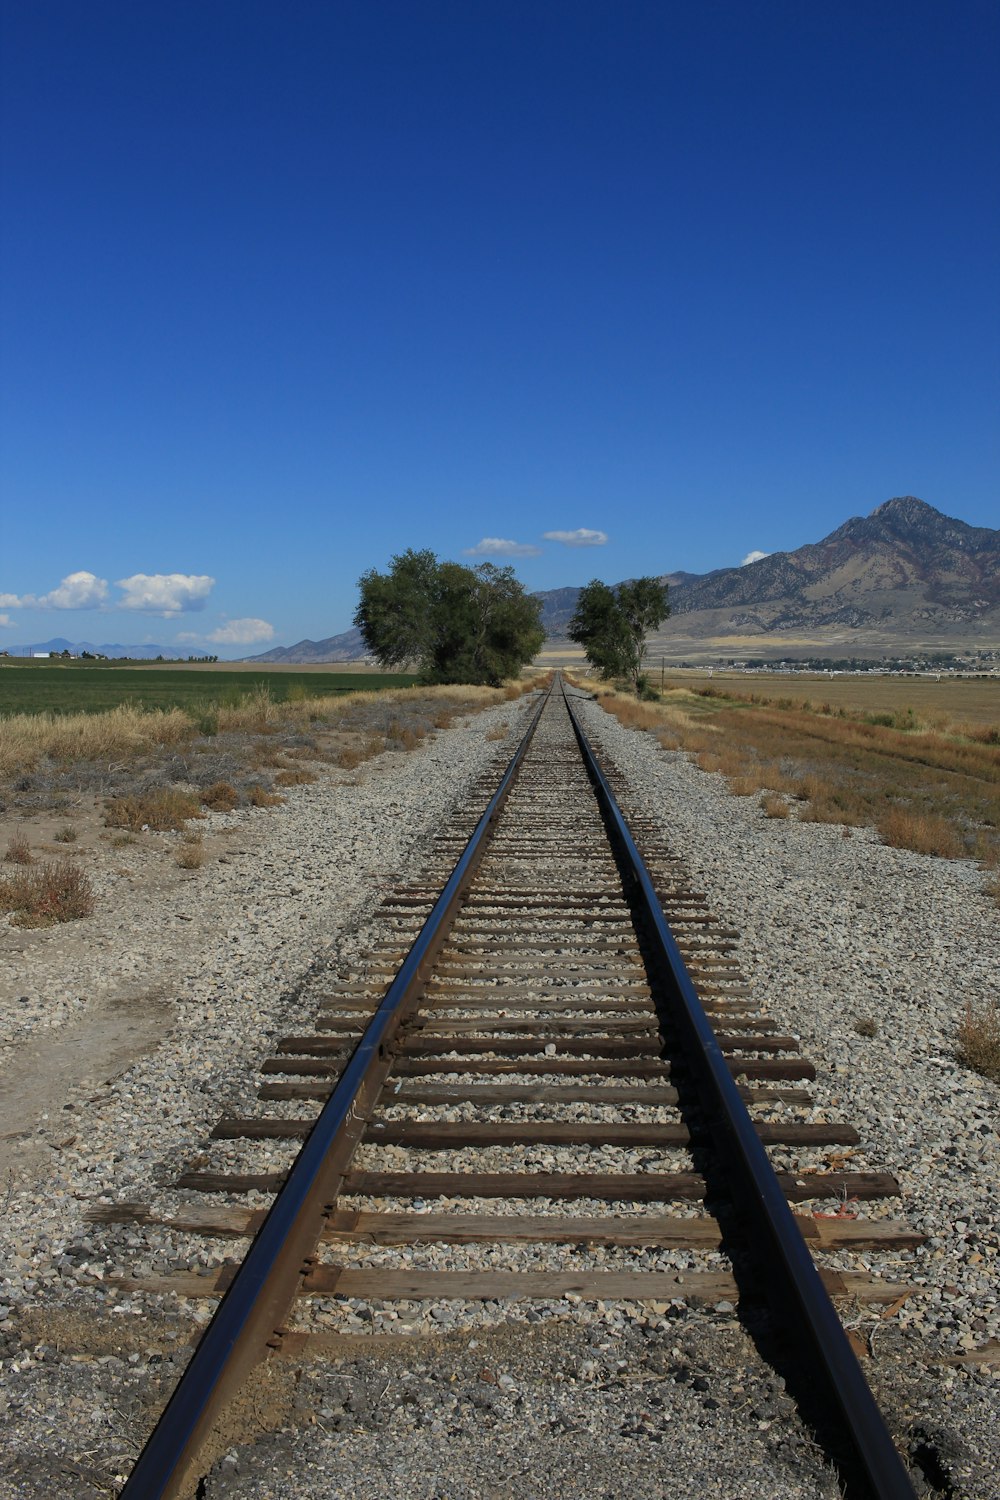 a train track running through a desert landscape